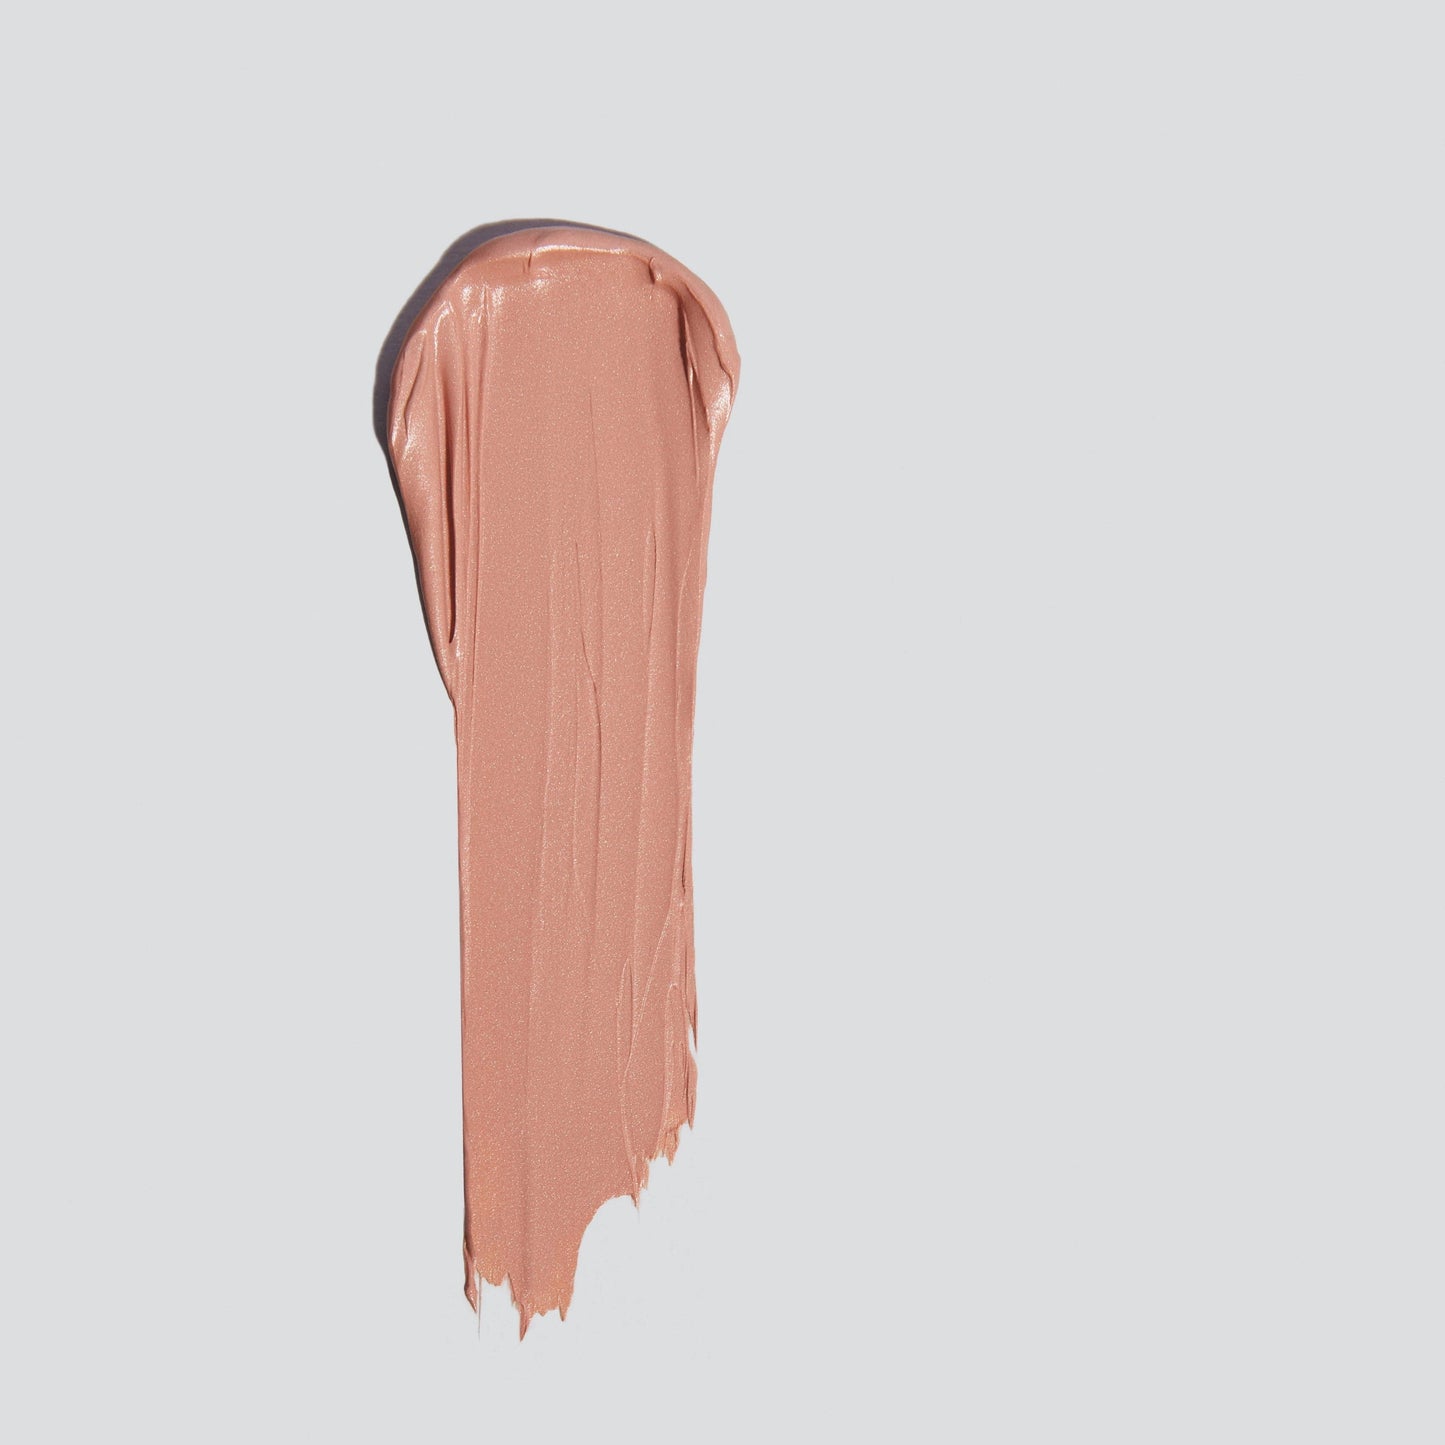 Ein 3D-Modell von „SkinPerfect Primer SPF 30 22ml | Make-Up-Basis“ auf weißem Hintergrund, perfekt zur Inszenierung des Nude-Looks.